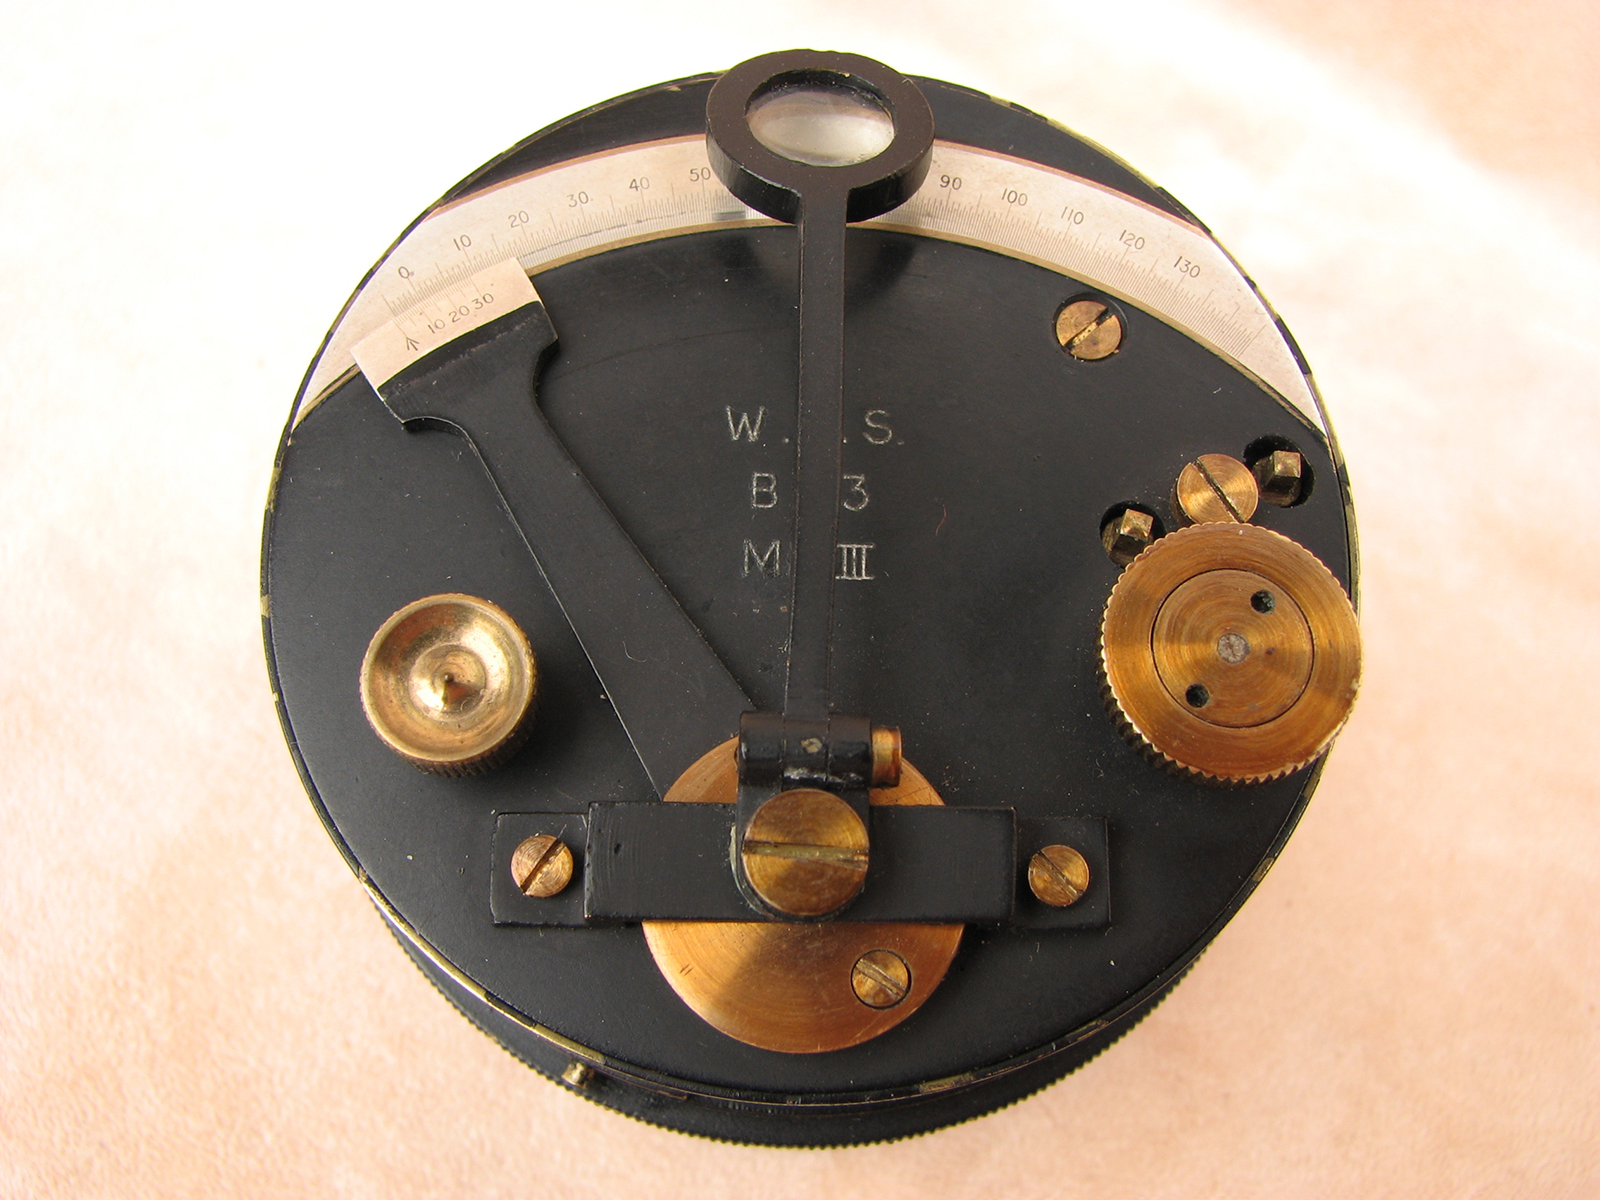 Genuine Stanley London WW2 MK III pocket sextant in case